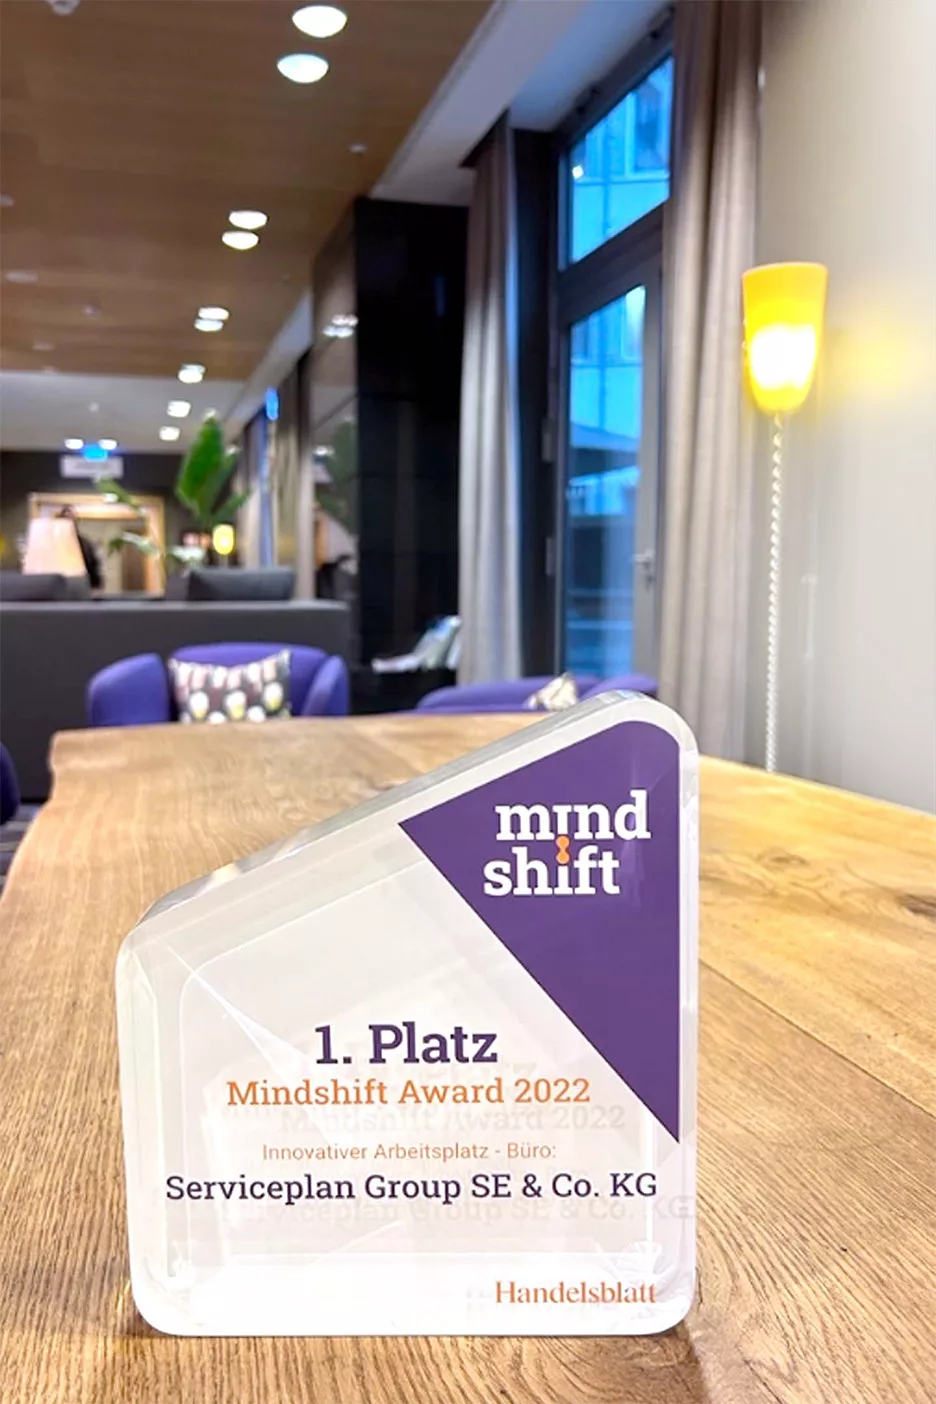 Der 1. Platz beim Mindshift Award 2022 ging für den innovativen Arbeitsplatz an Serviceplan - dieser steht plakativ und gut sichtbar im Gemeinschaftsraum